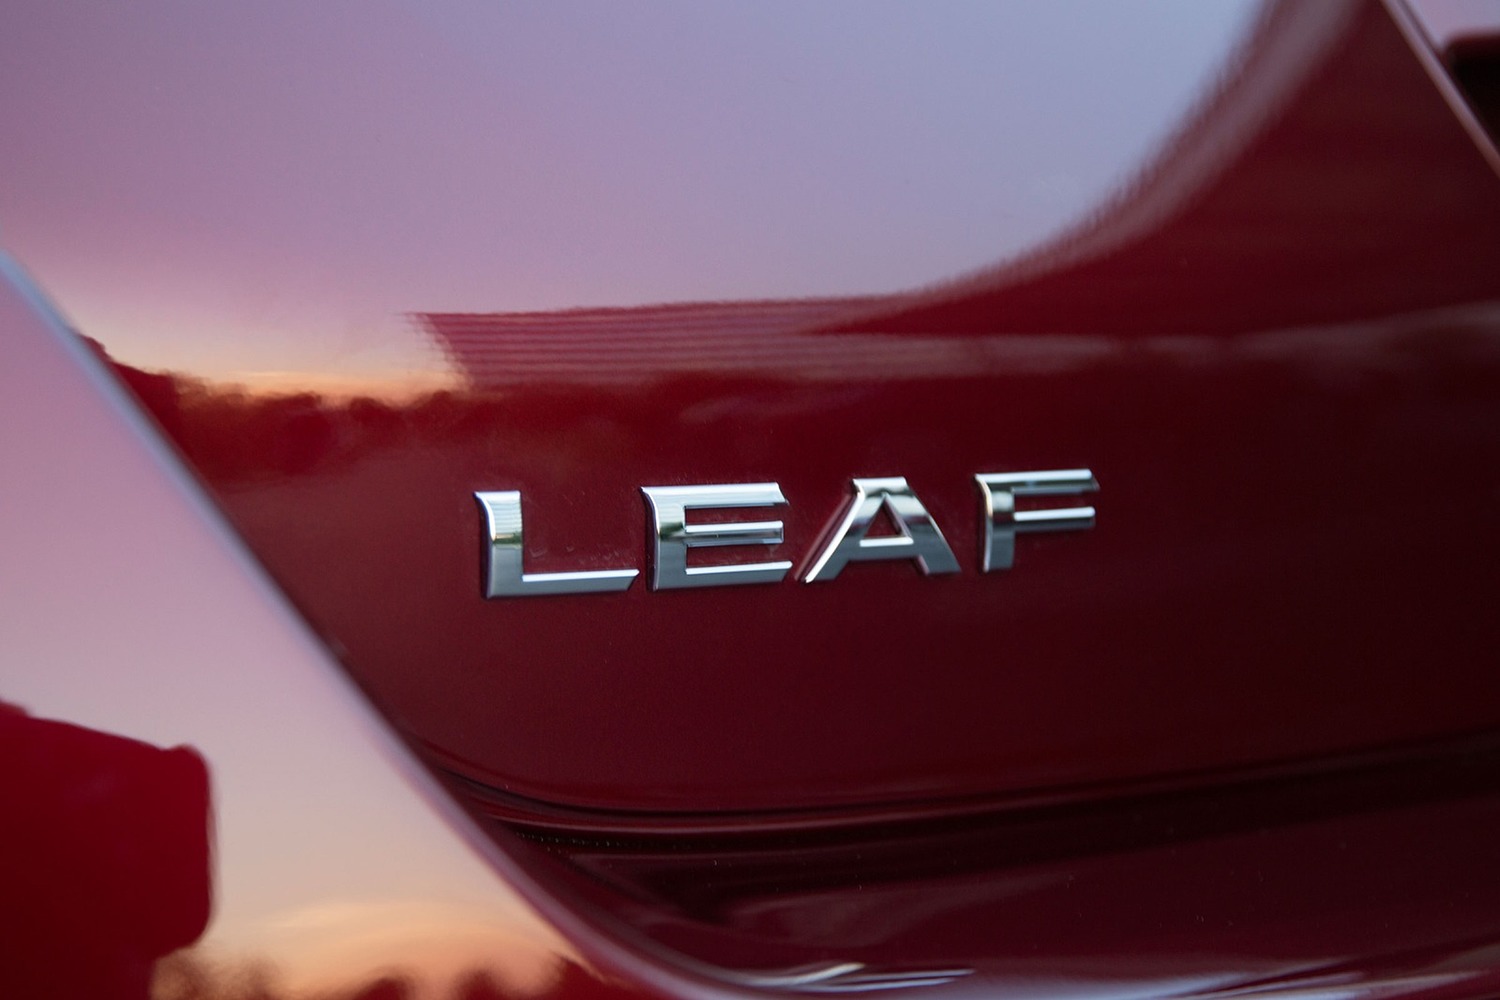 Nissan Leaf SL 4dr Hatchback Rear Badge (2016 model year shown)